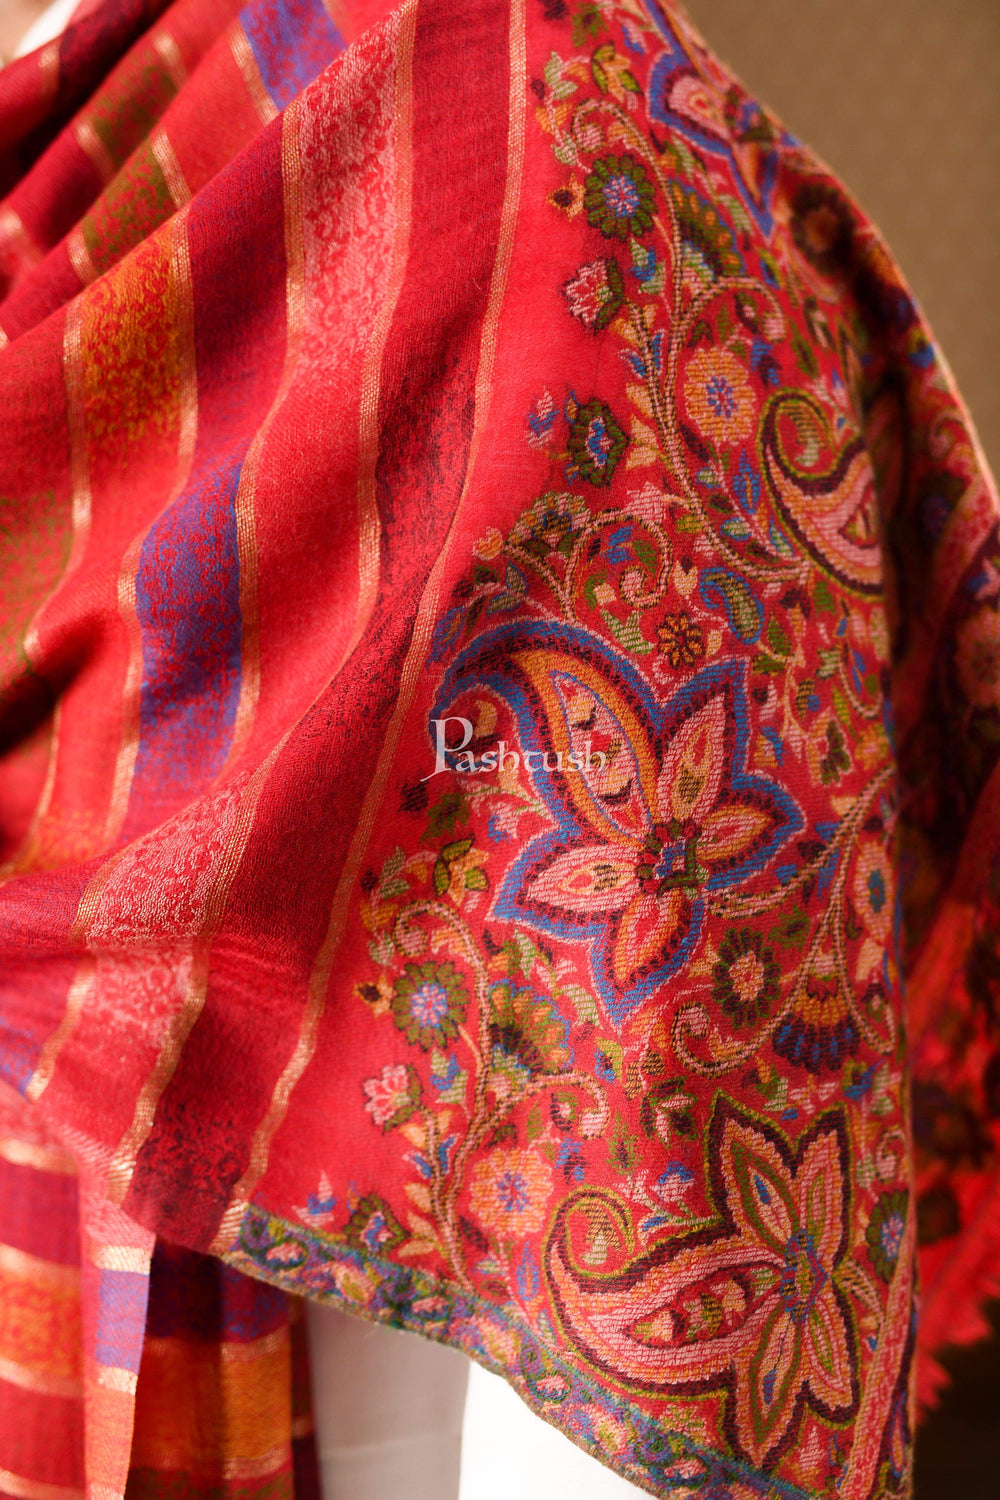 Pashtush India 70x200 Pashtush Mens Pure Wool Striped Kaani Stole